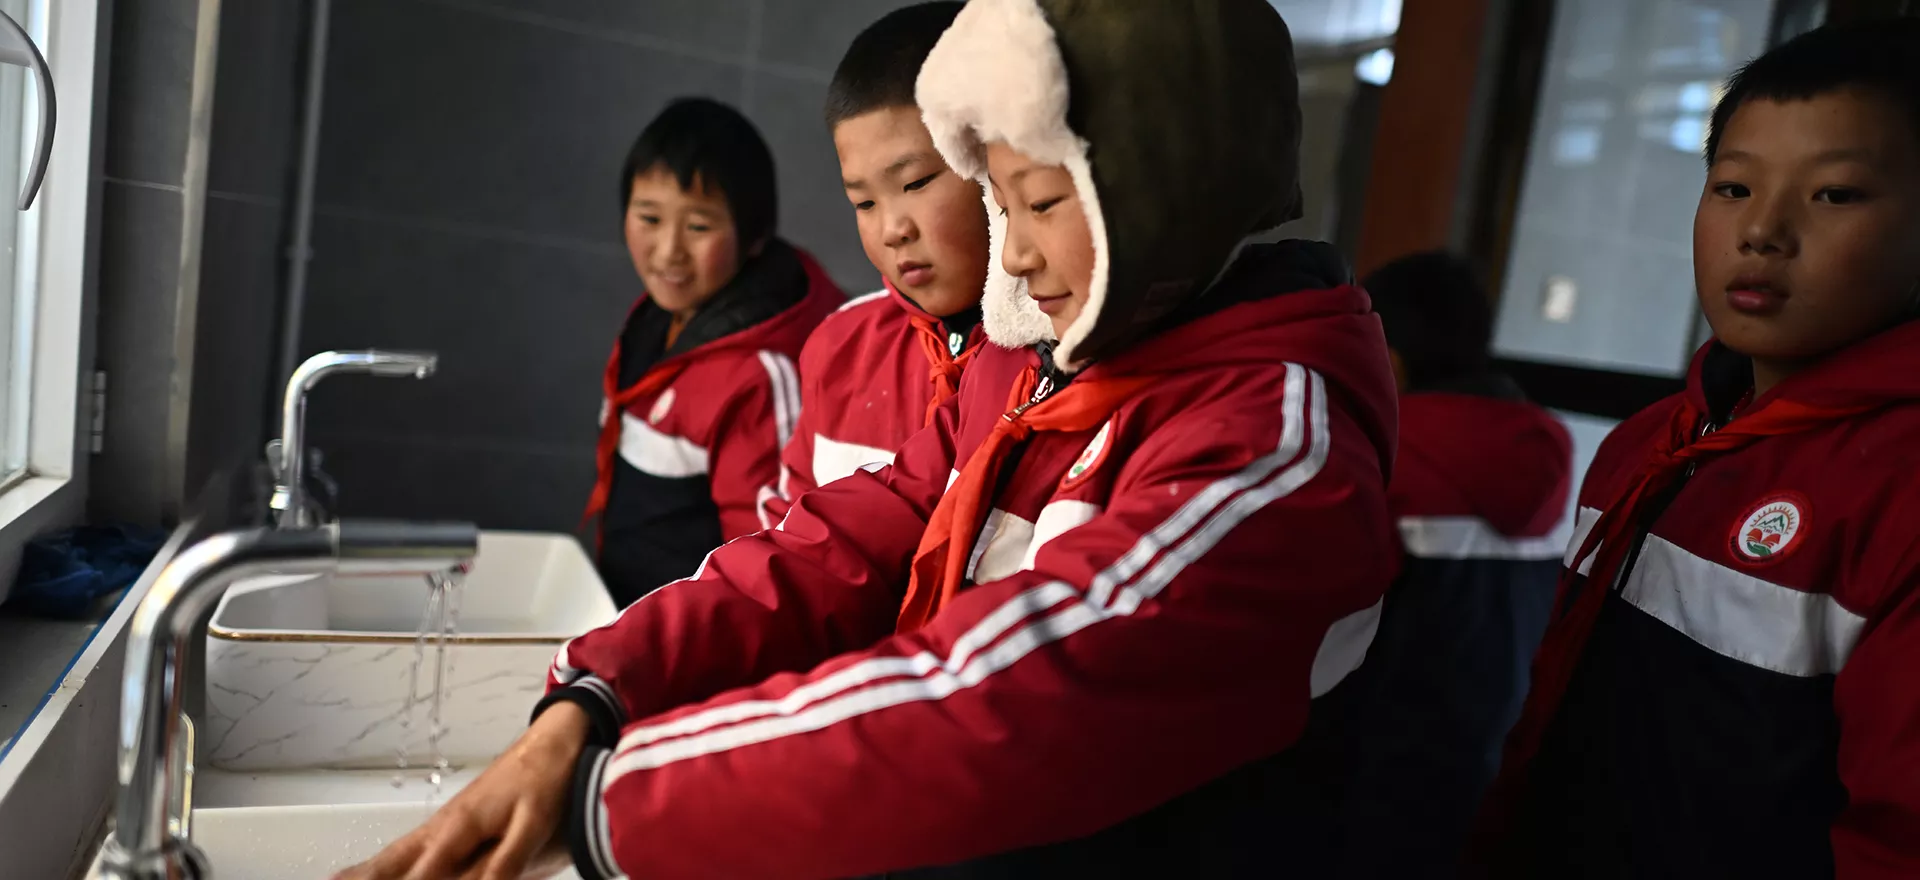 在青海省果洛藏族自治州玛多县花石峡镇藏文中心寄宿制学校，五年级学生东桑（右一）在使用厕所后洗手，该学校是环境卫生特别项目学校之一（11月2日摄）。